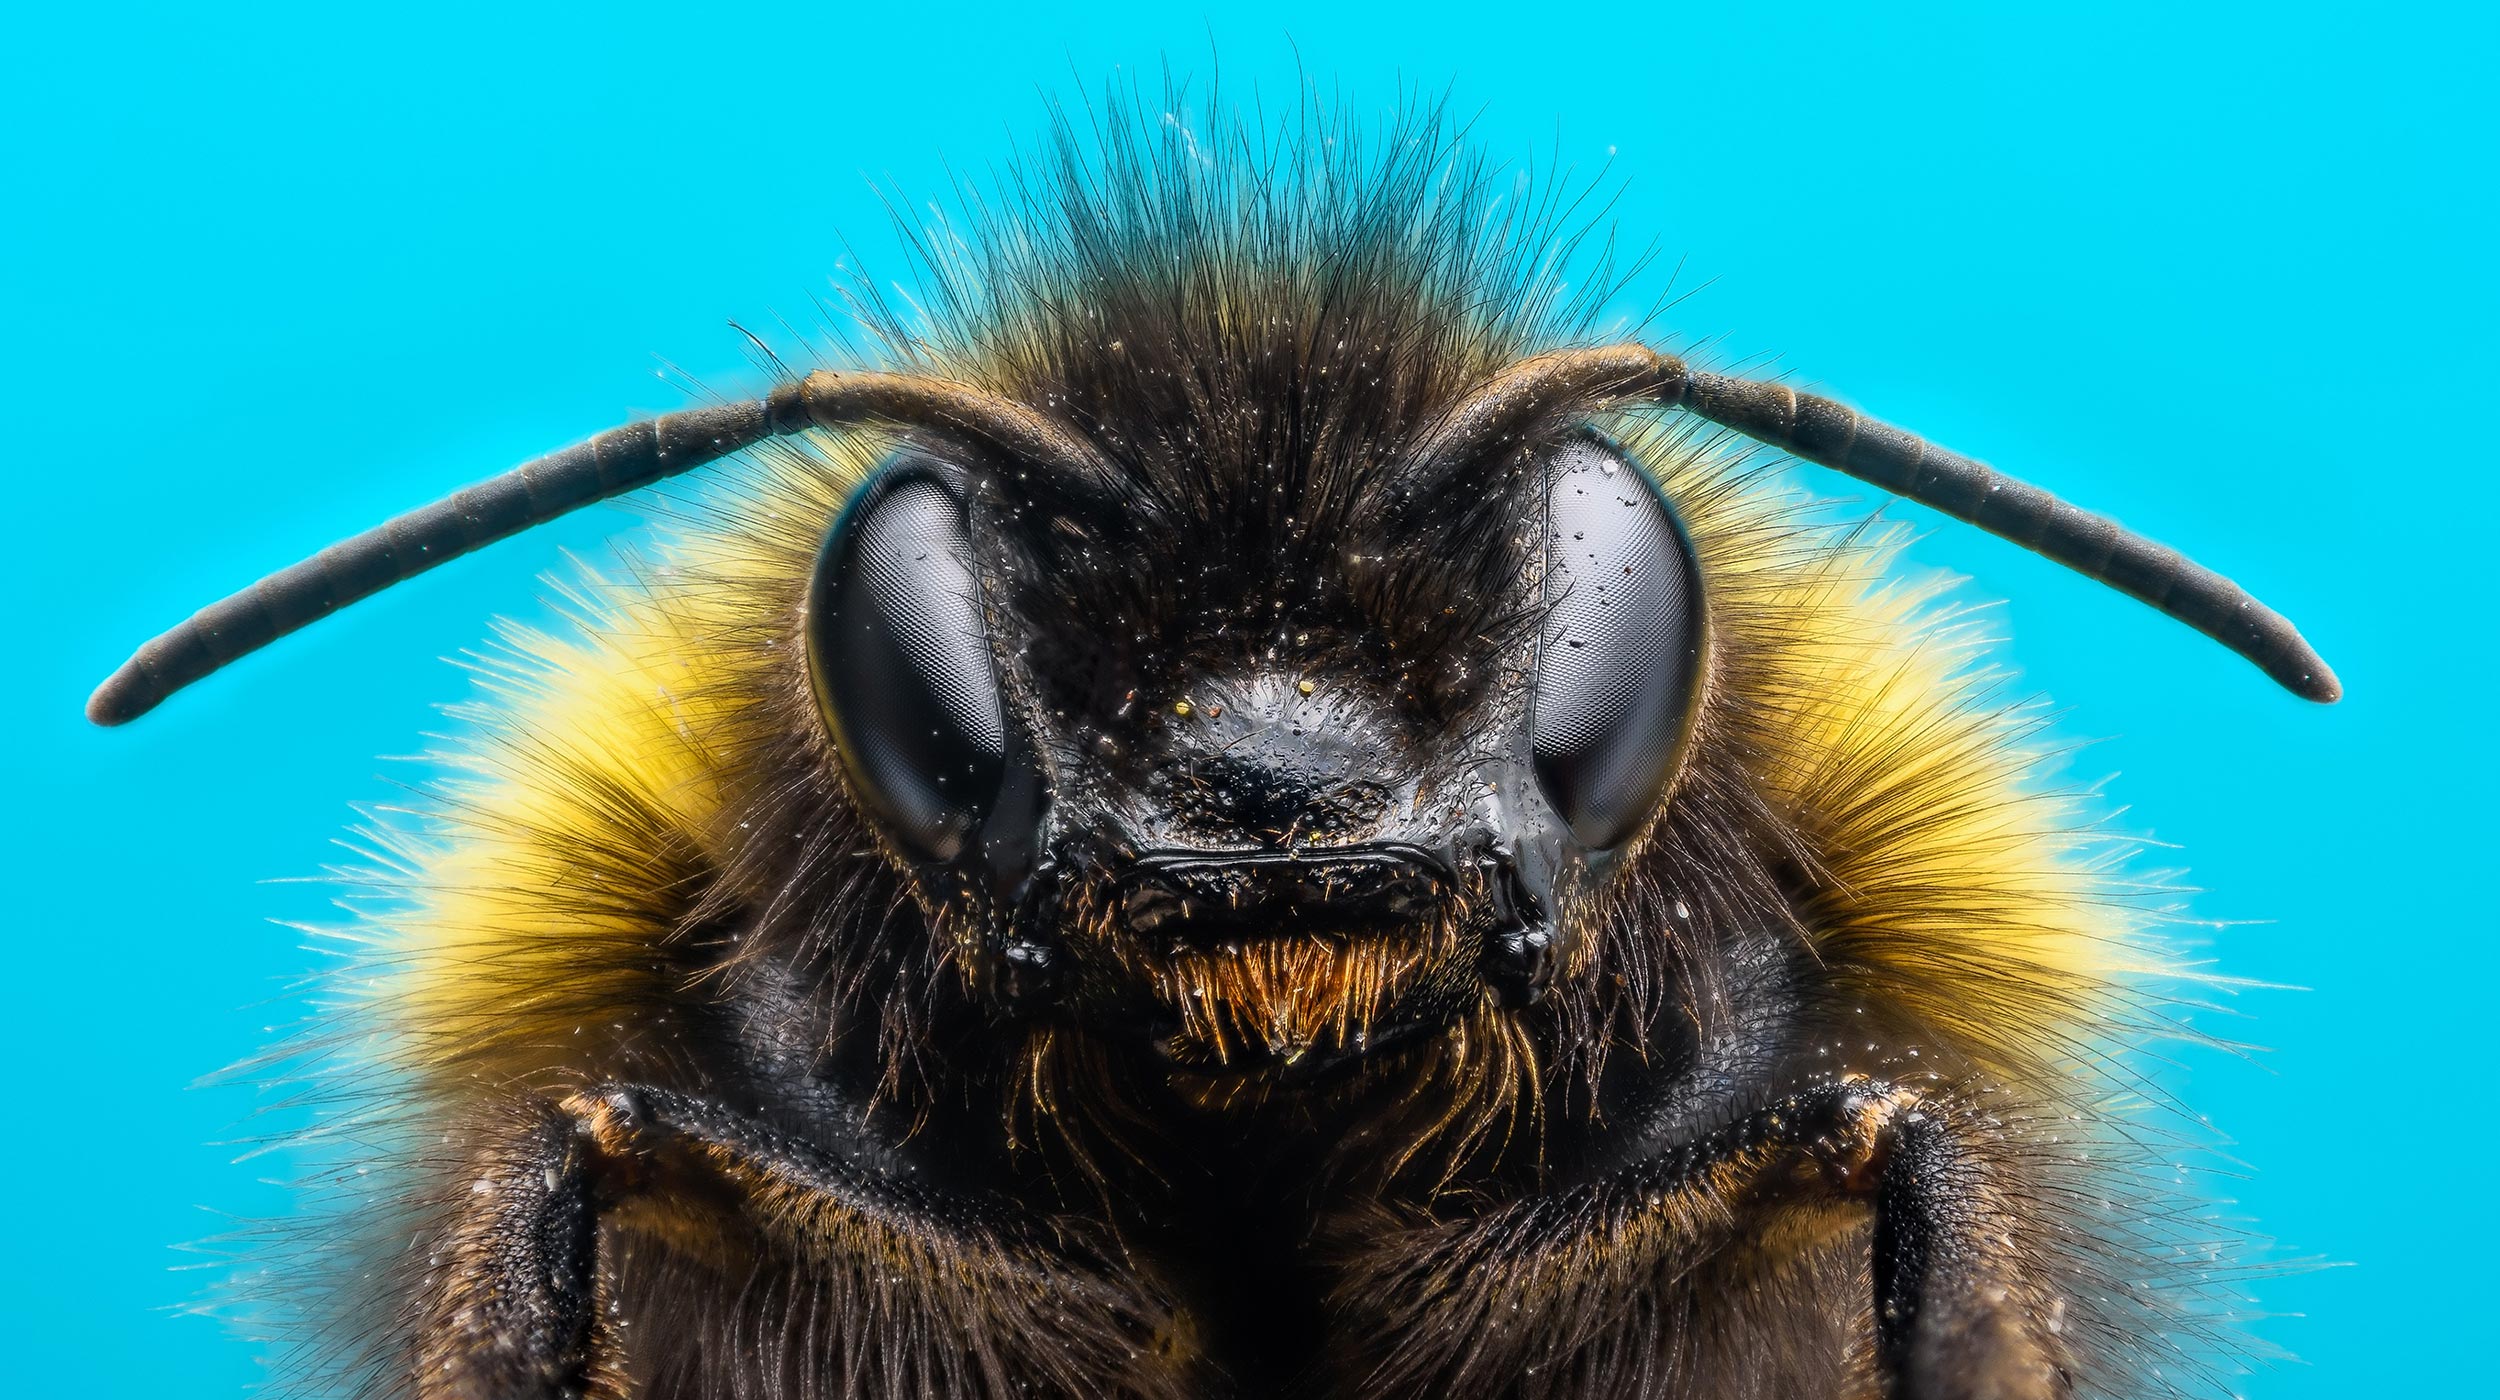 Hommels leren puzzels op te lossen door naar andere bijen te kijken